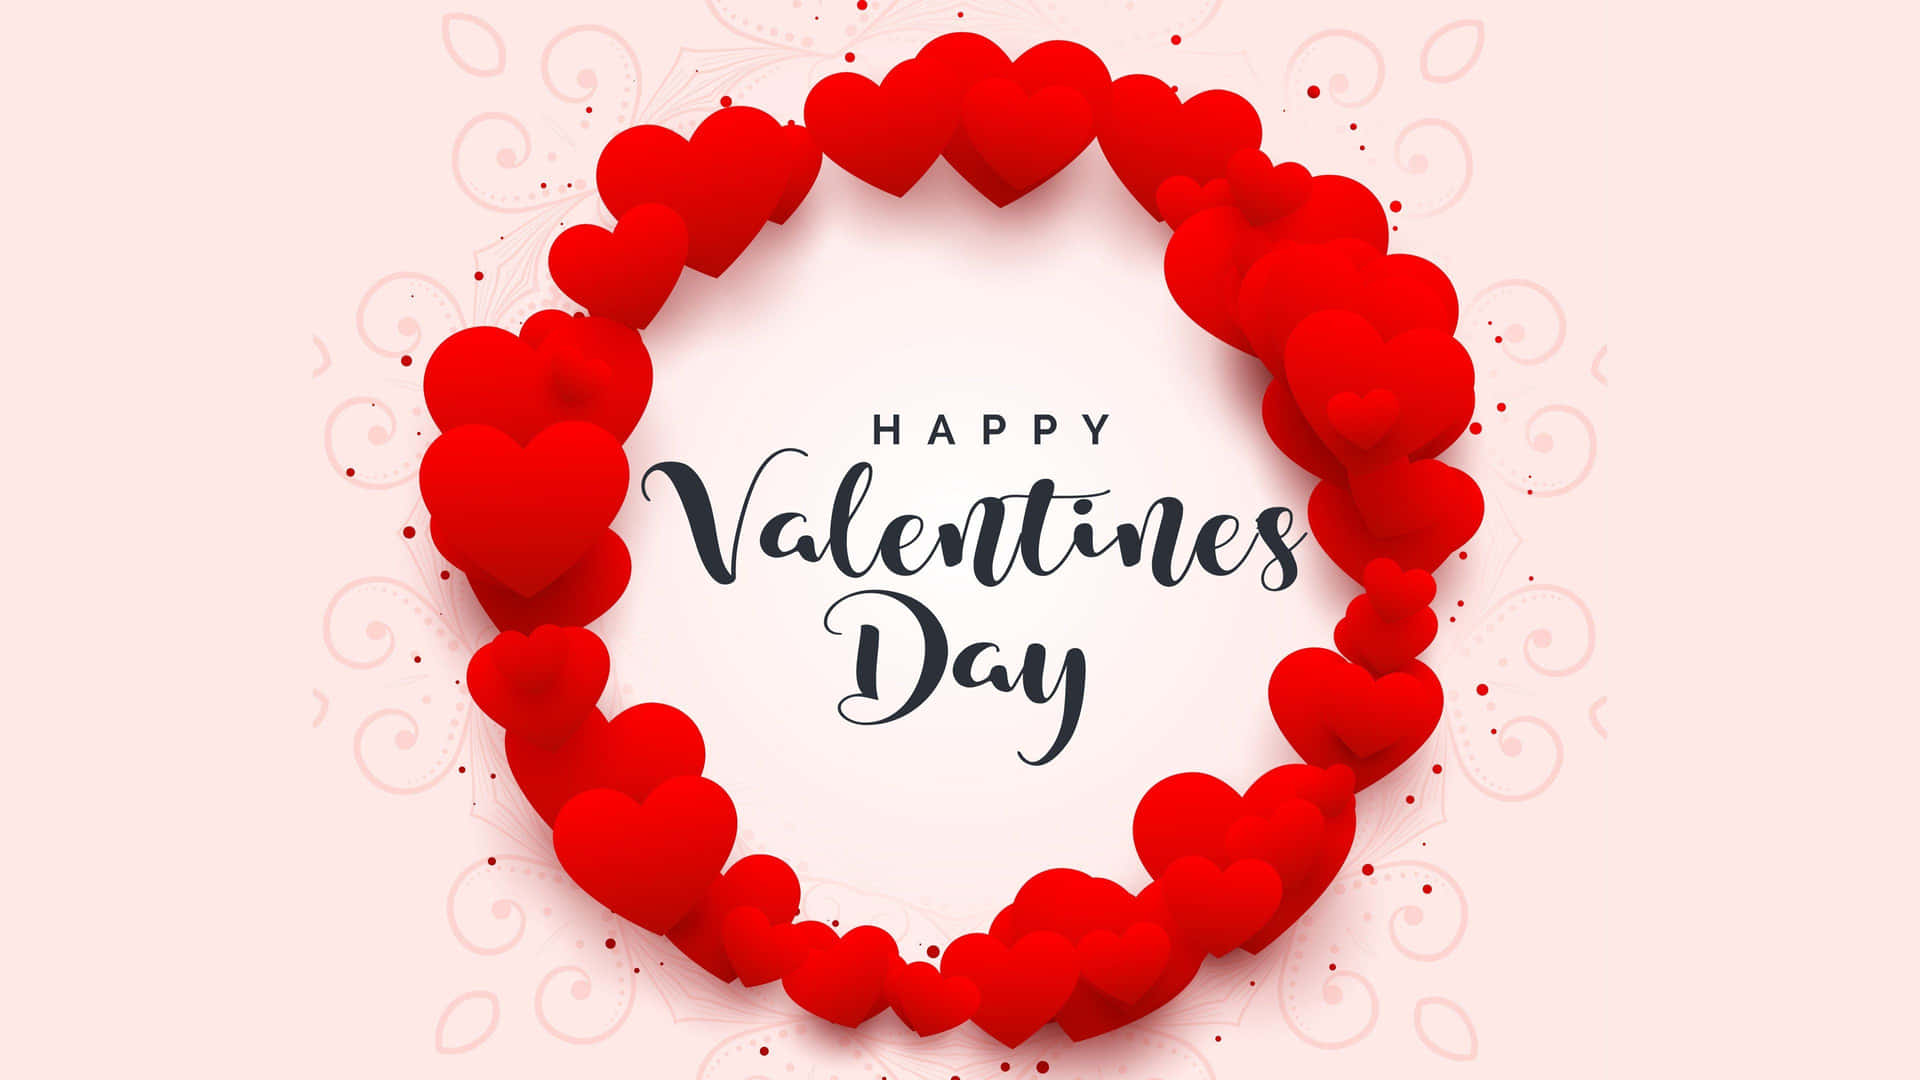 !Vis din kærlighed denne Valentinsdag! Wallpaper